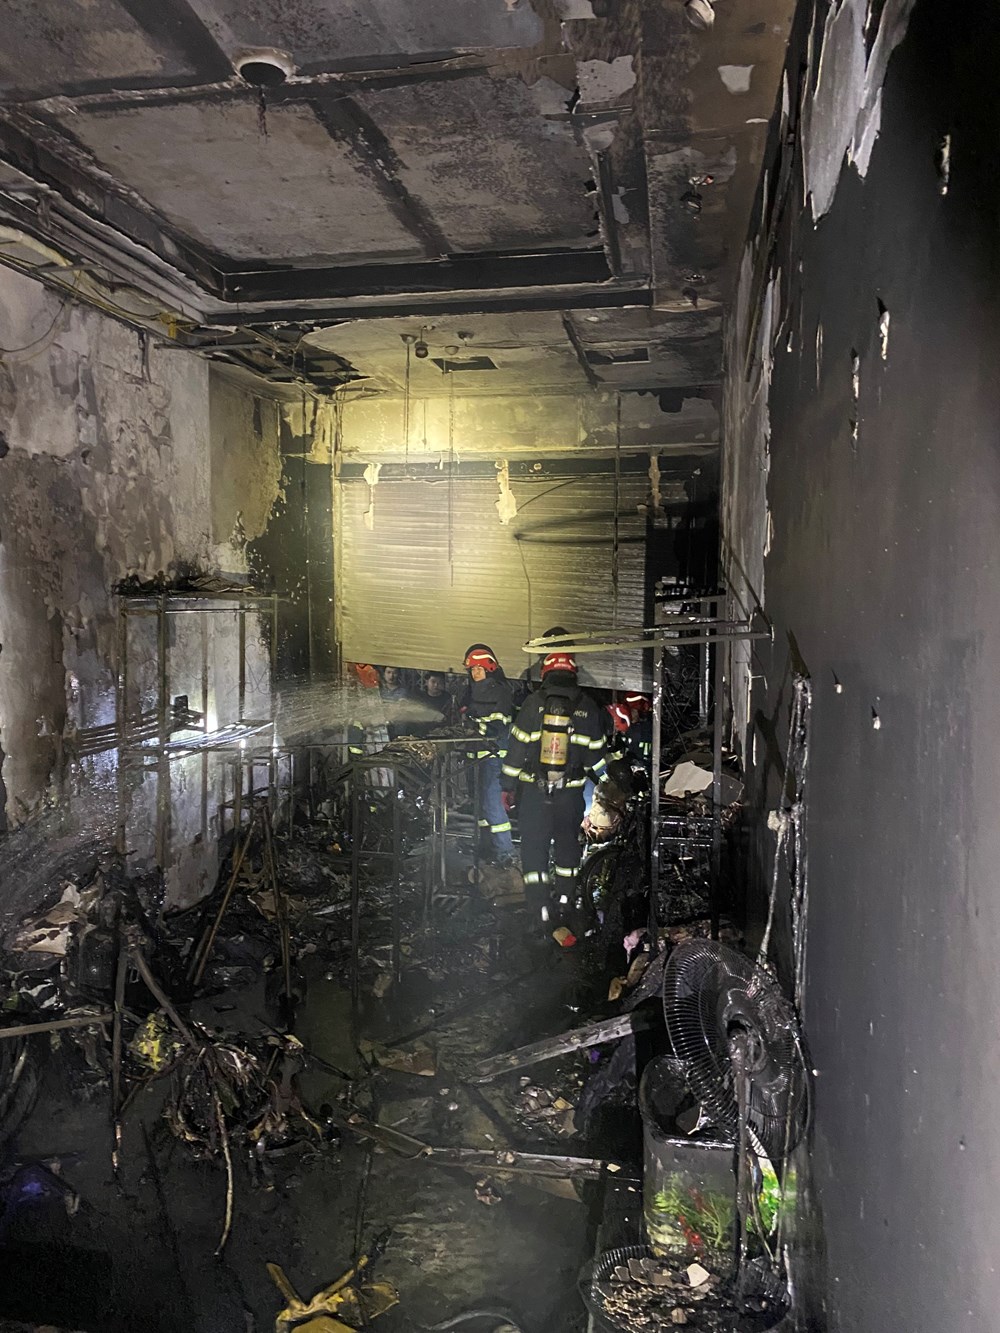 Cháy cửa hàng quần áo, 5 người trong nhà thoát nạn nhờ lối thoát hiểm ở ban công - ảnh 1